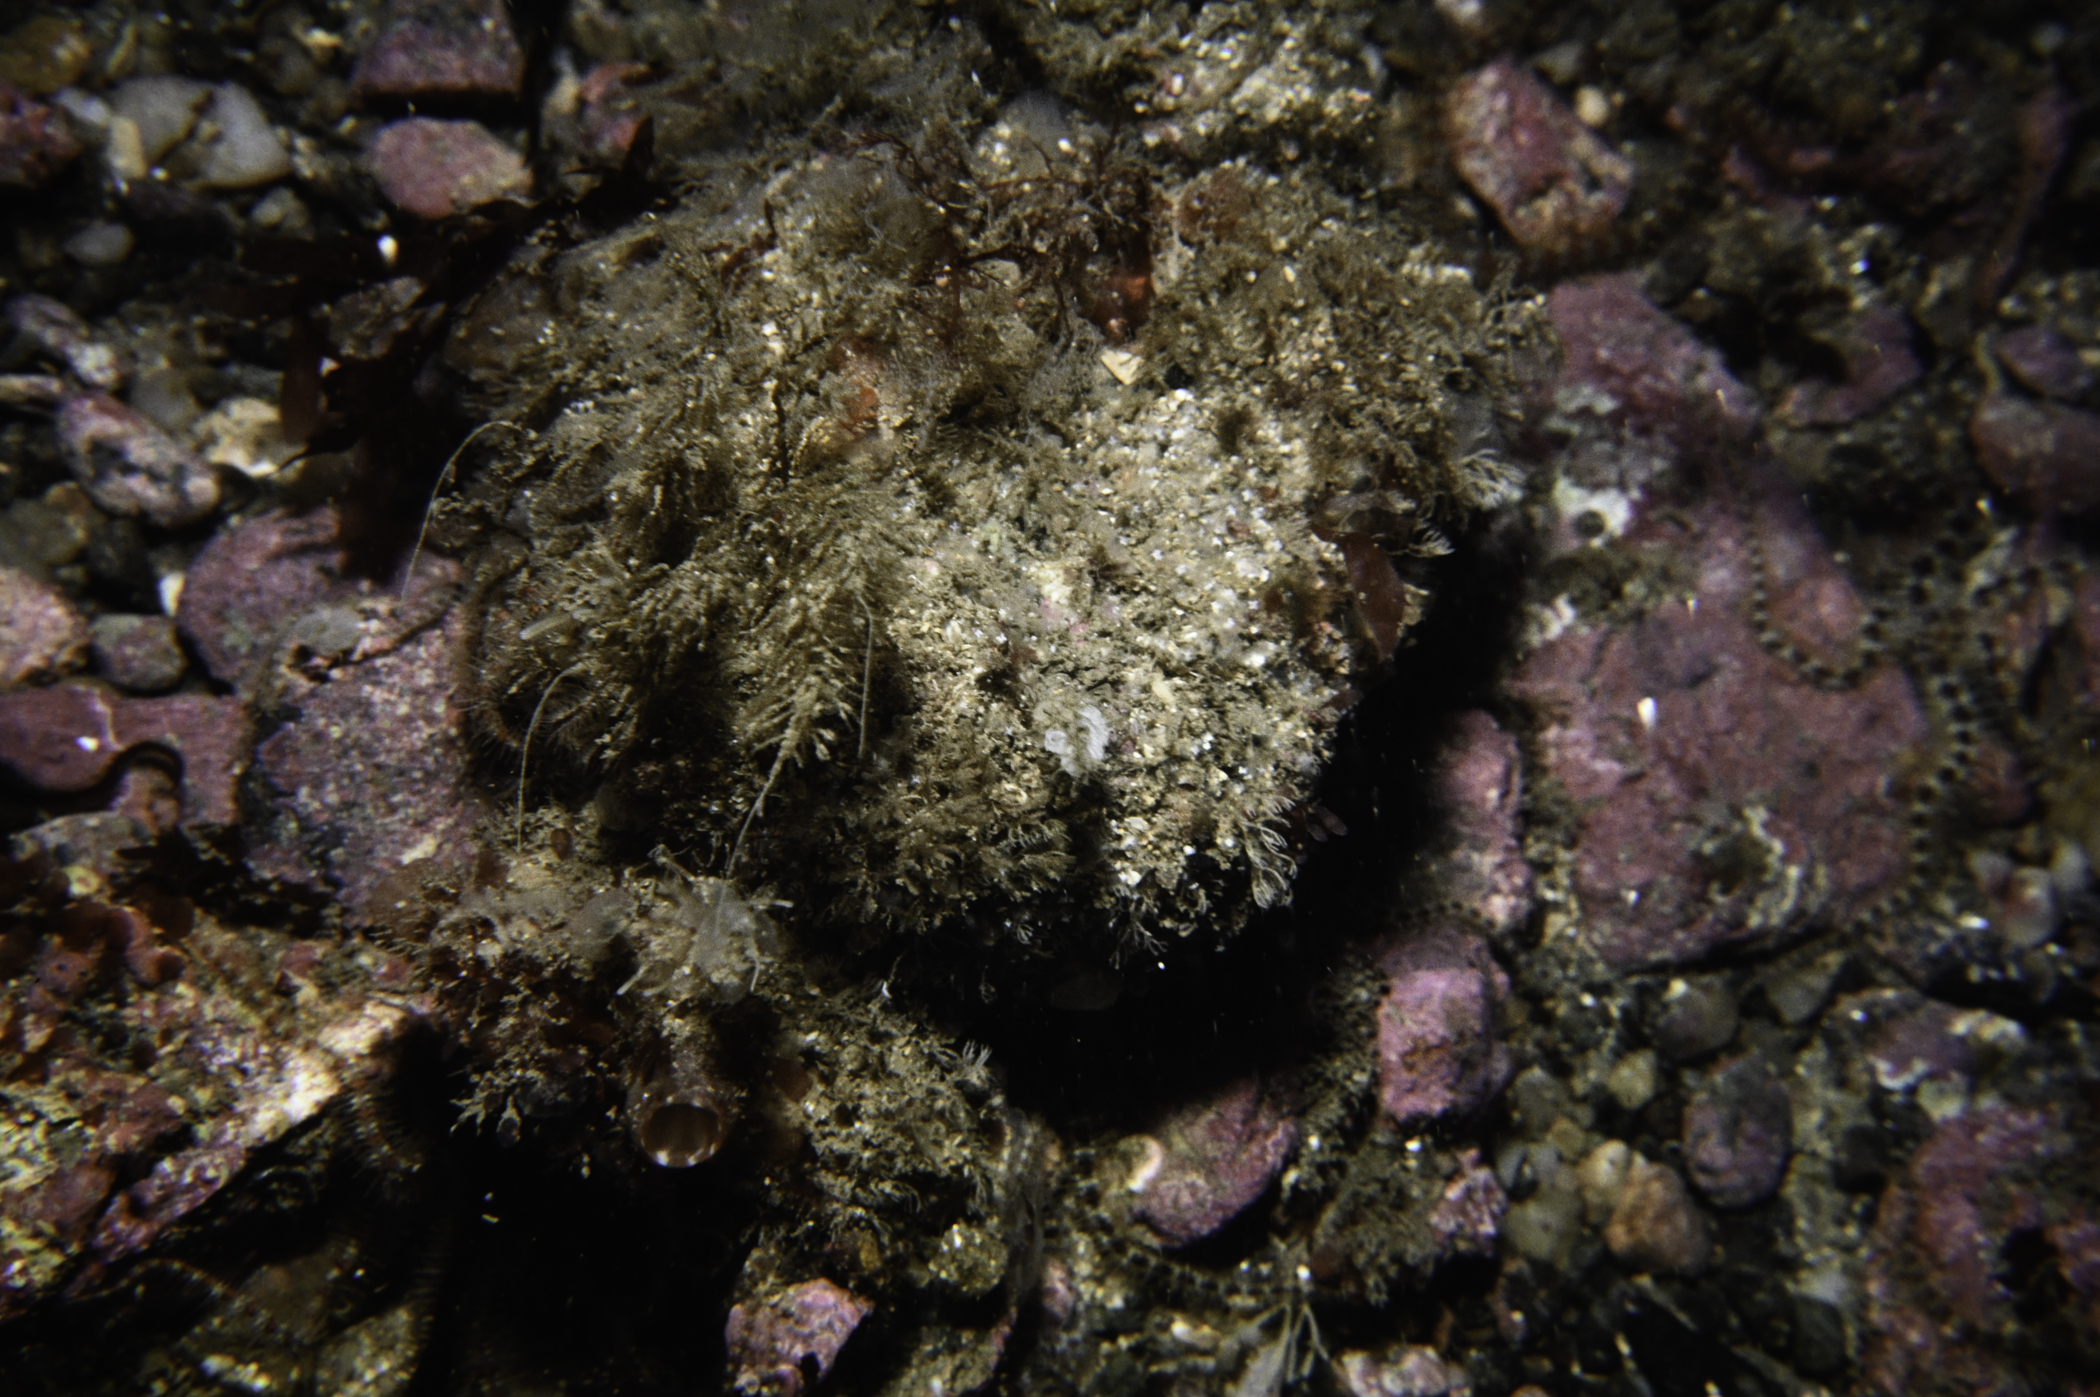 Sertularia argentea, Pyura microcosmus, Pycnoclavella stolonialis. Site: SE of Murlough Bay. 